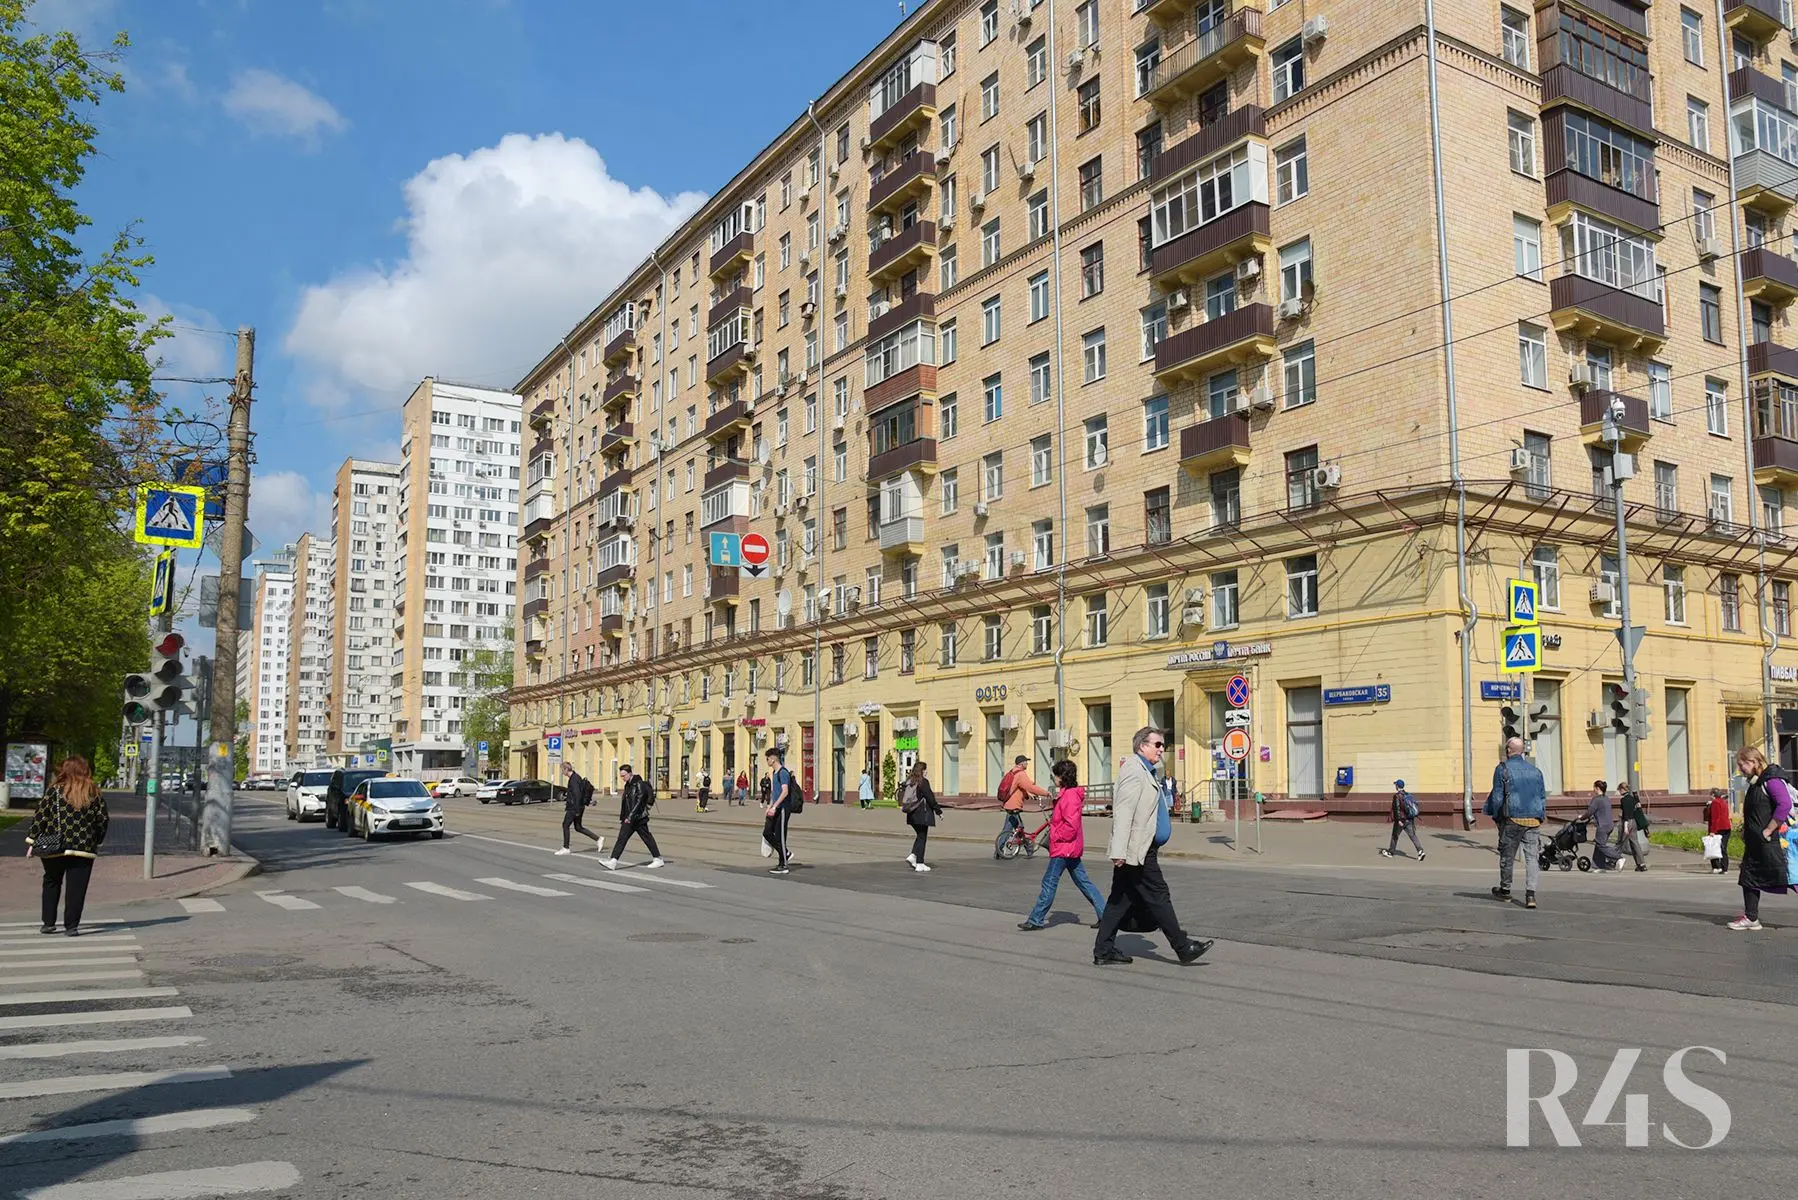 Аренда торговых помещений площадью 19.3 - 205.2 м2 в Москве:  Щербаковская, 35 R4S | Realty4Sale